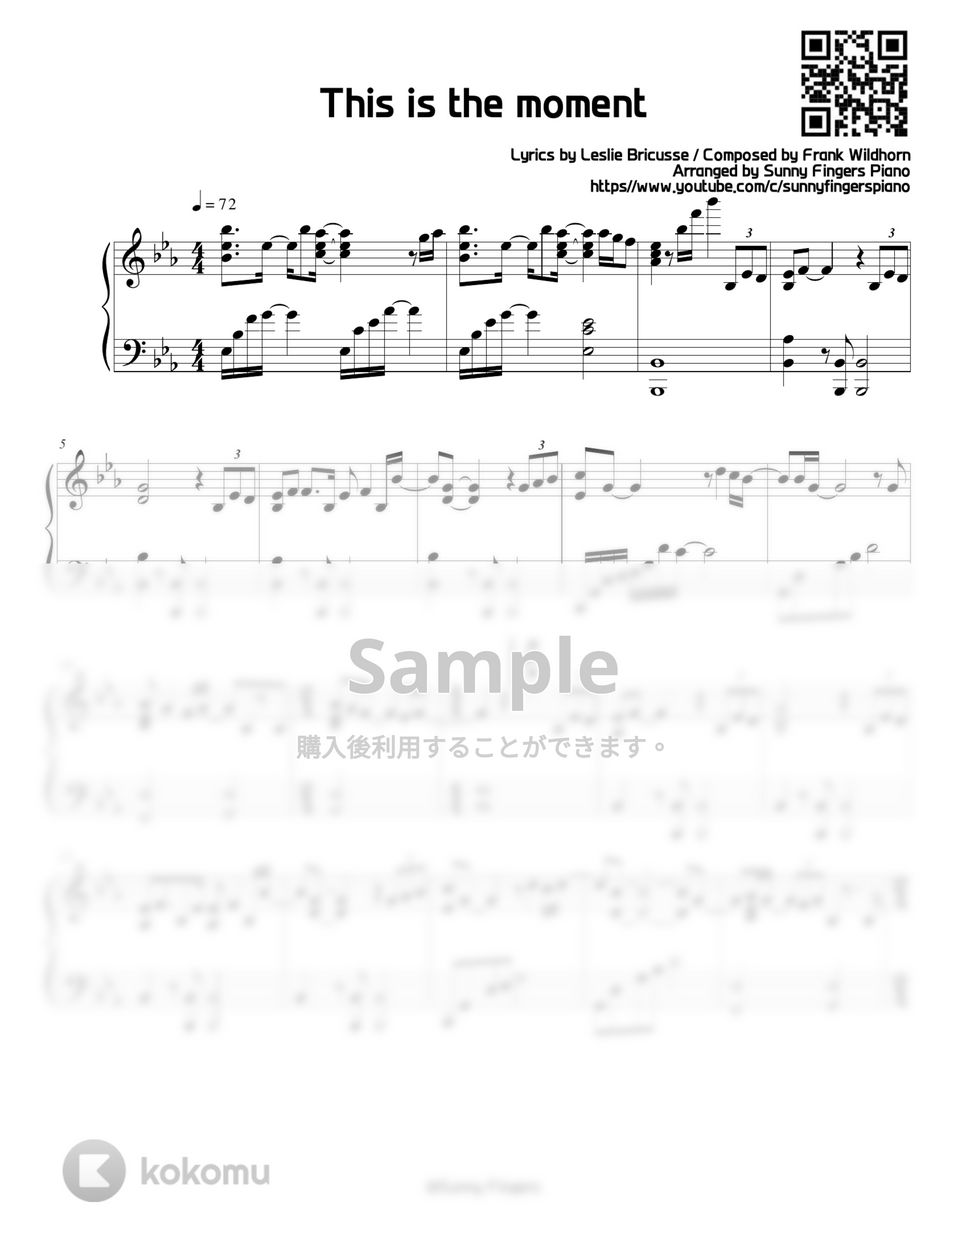 ジキルとハイド - This is the moment 楽譜 by Sunny Fingers Piano